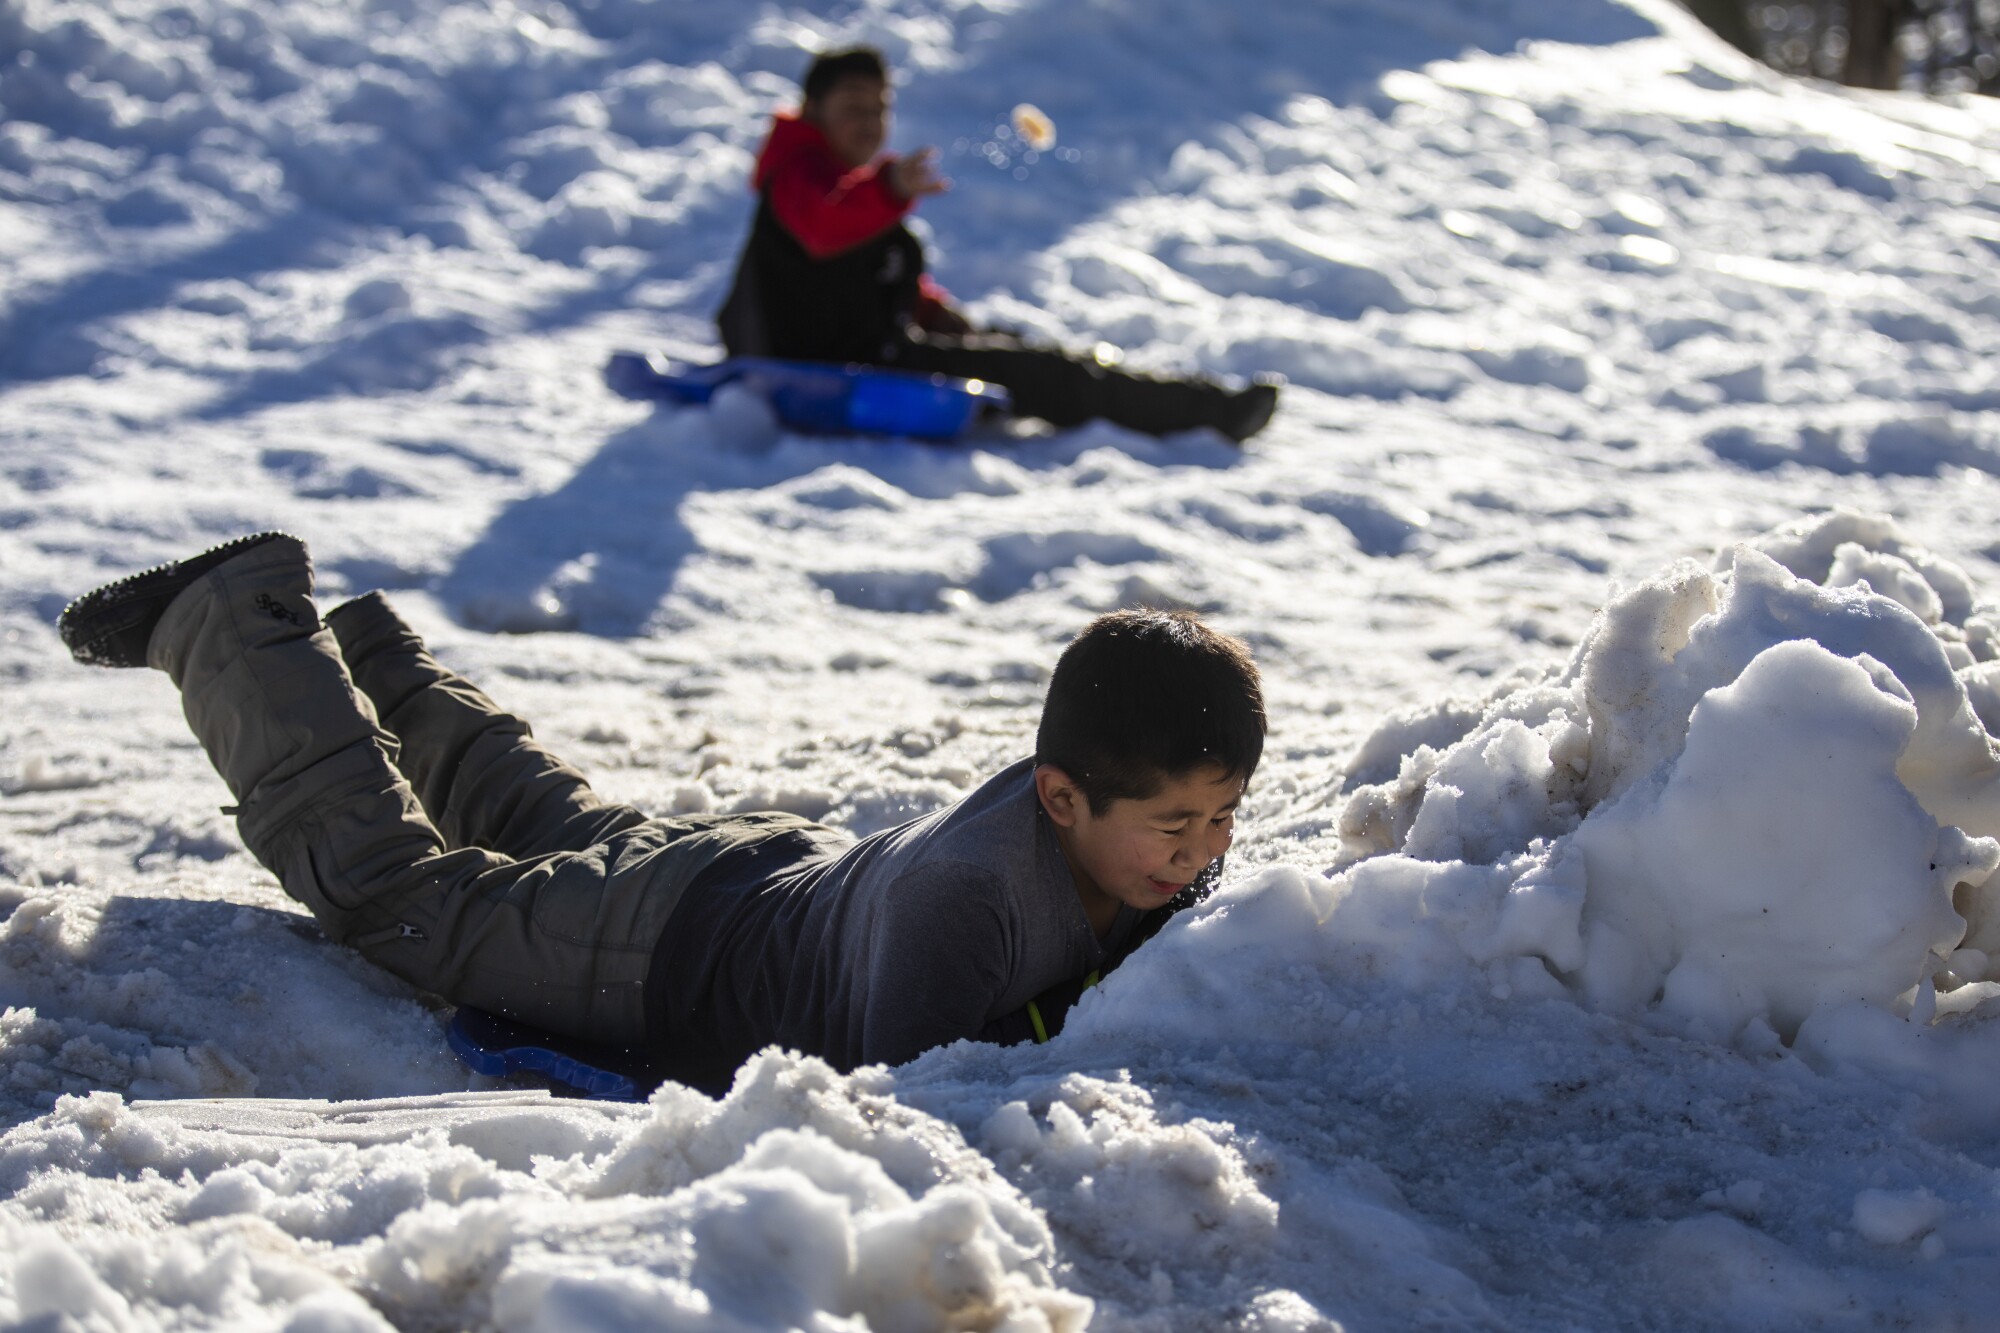 دو پسر، یکی نشسته و دیگری روی شکم، در میان برف های انباشته سورتمه سواری می کنند